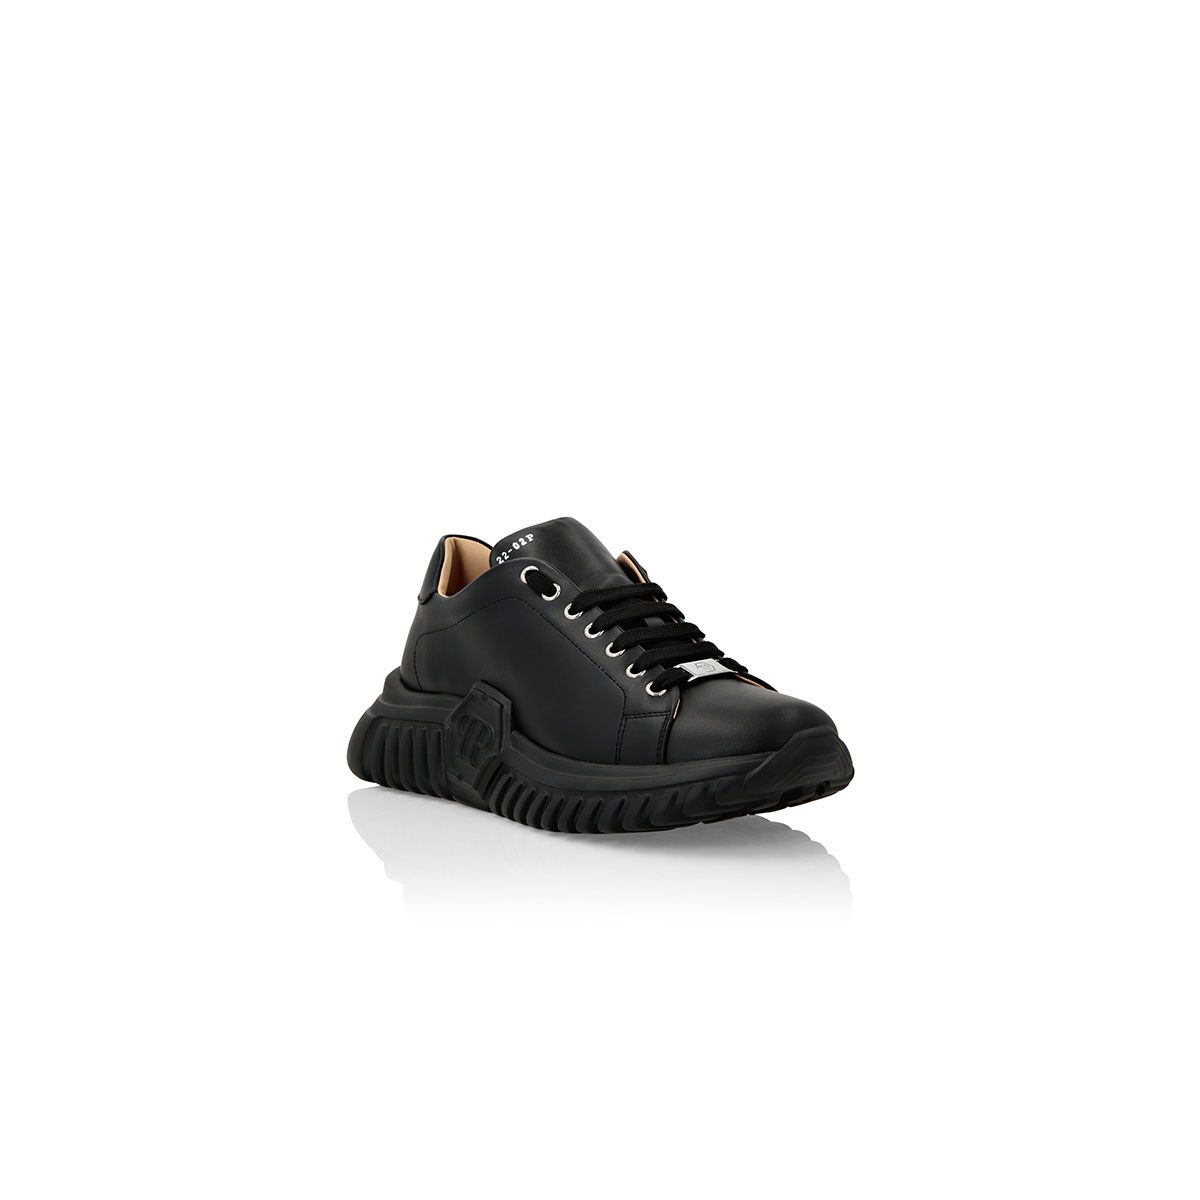 Basic Black Sneakers